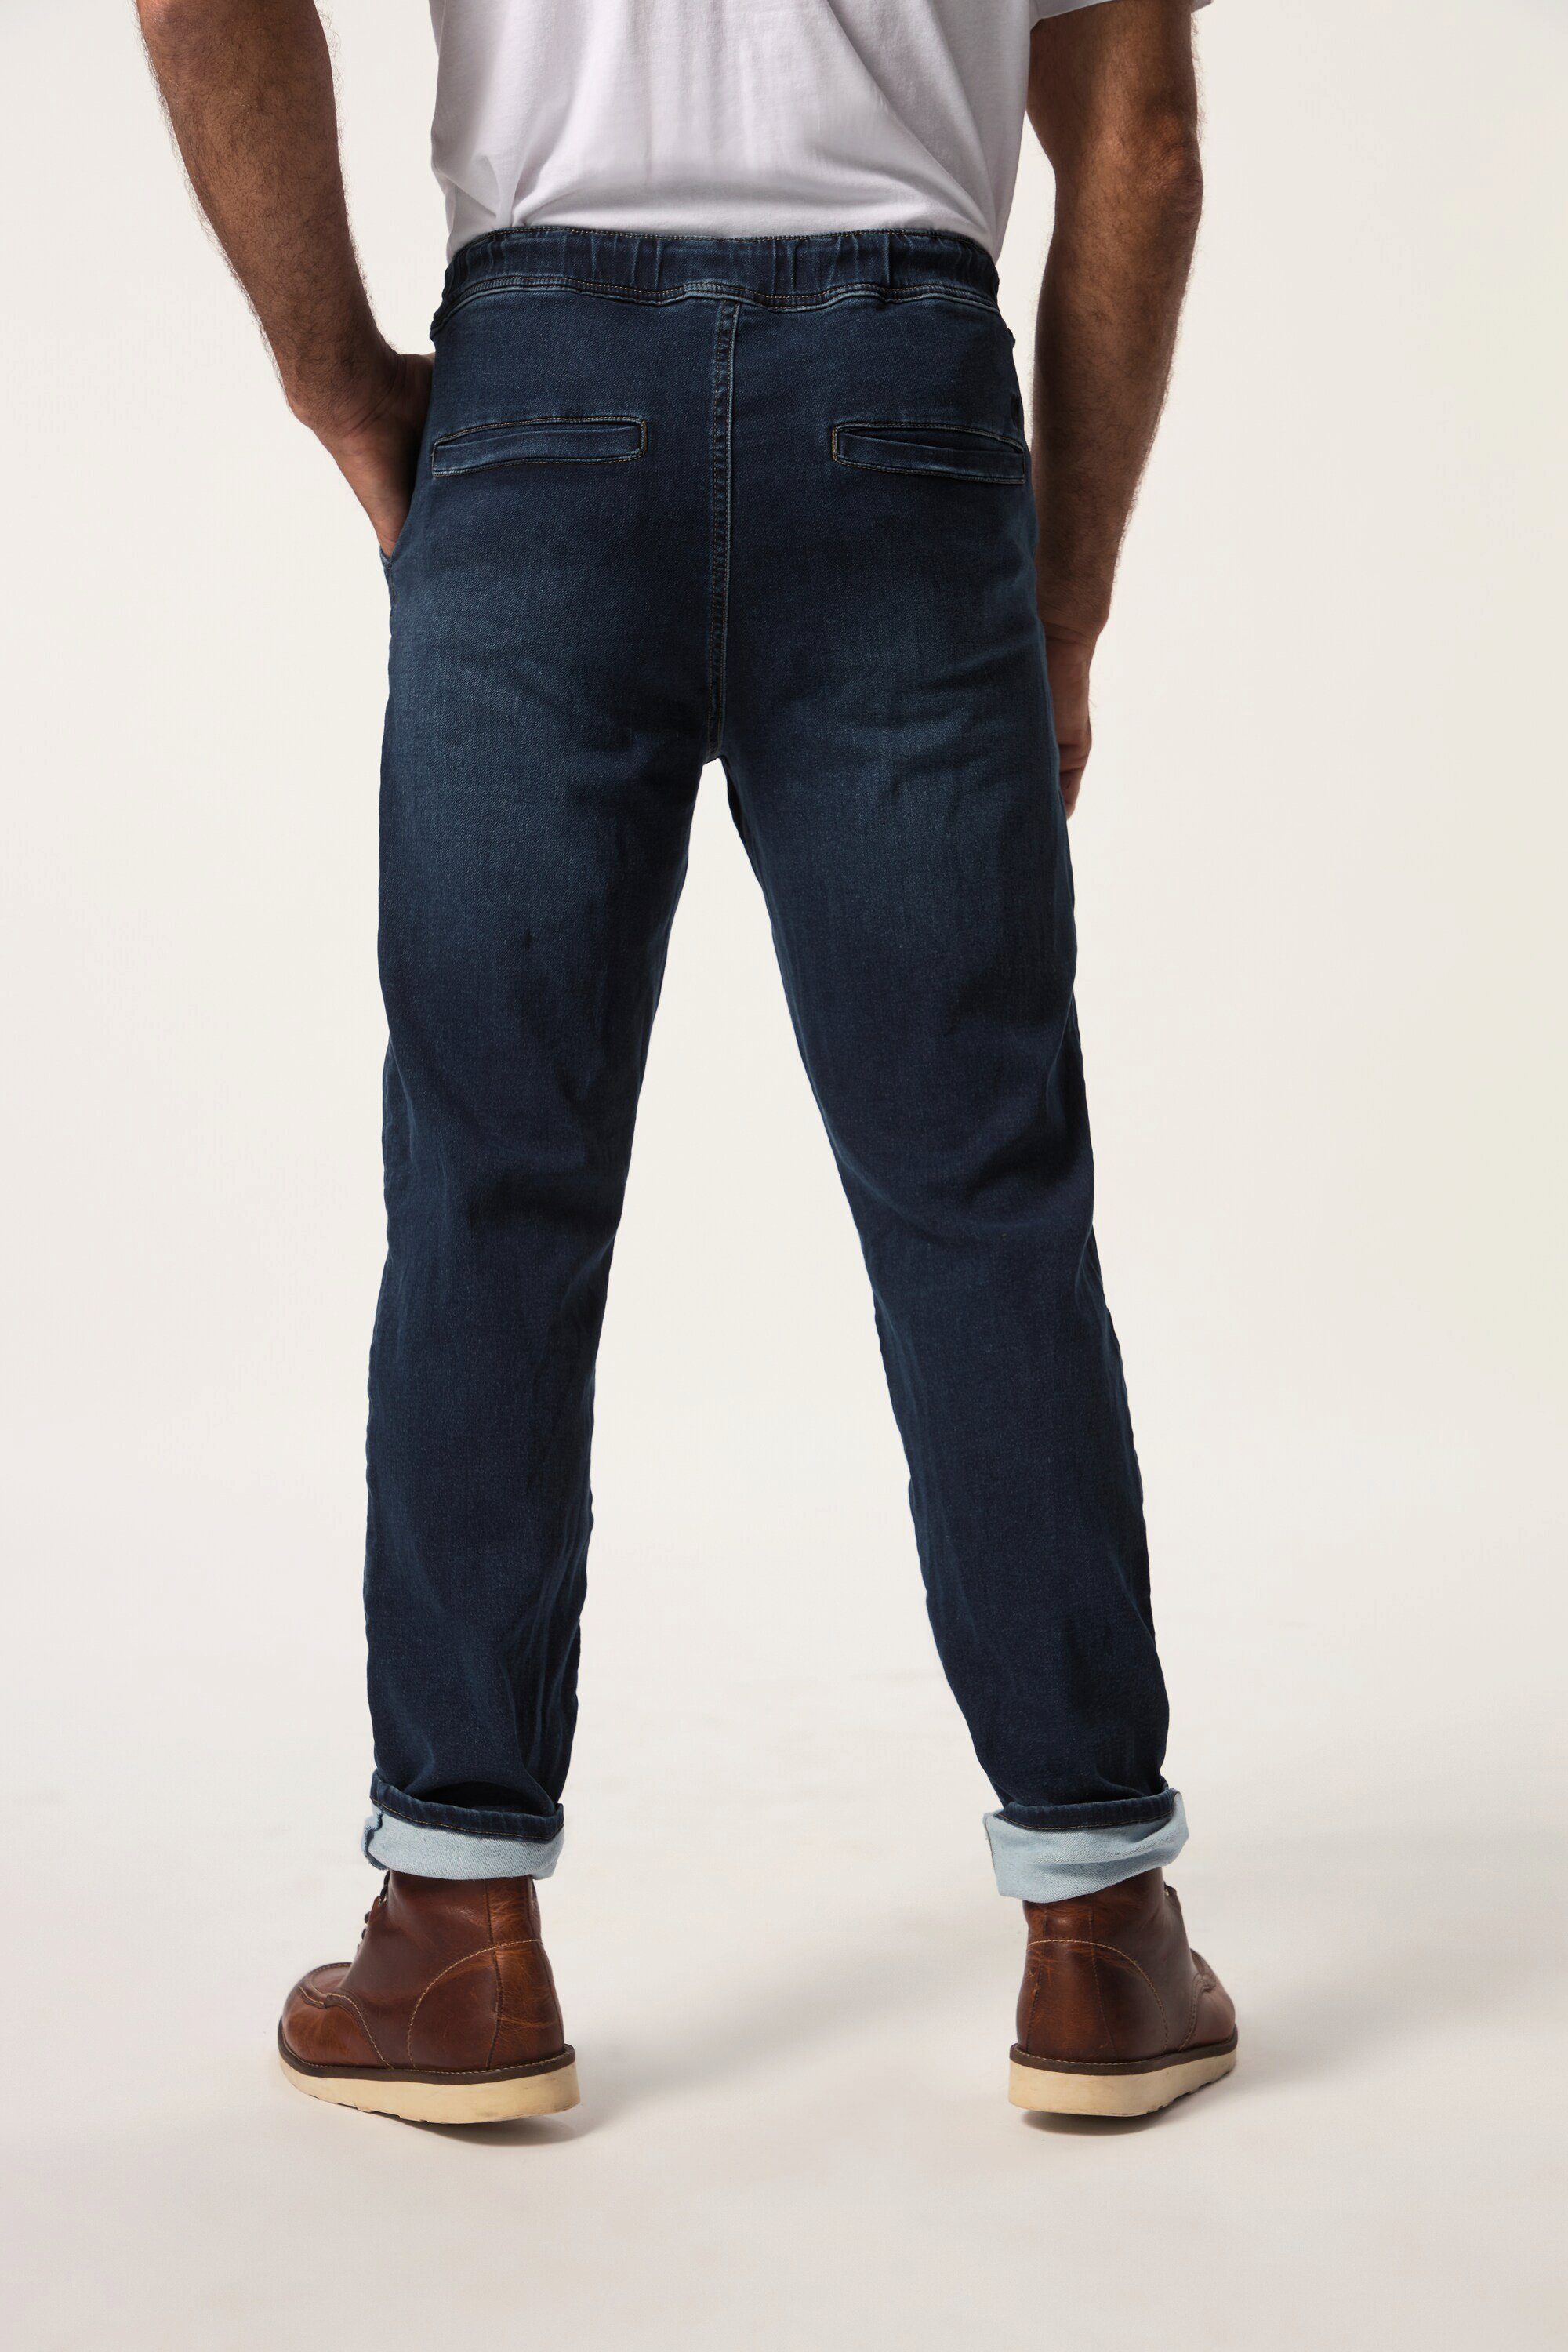 Cargohose JP1880 blue dark Fit FLEXNAMIC® Schlupfbund denim Denim Jeans Straight